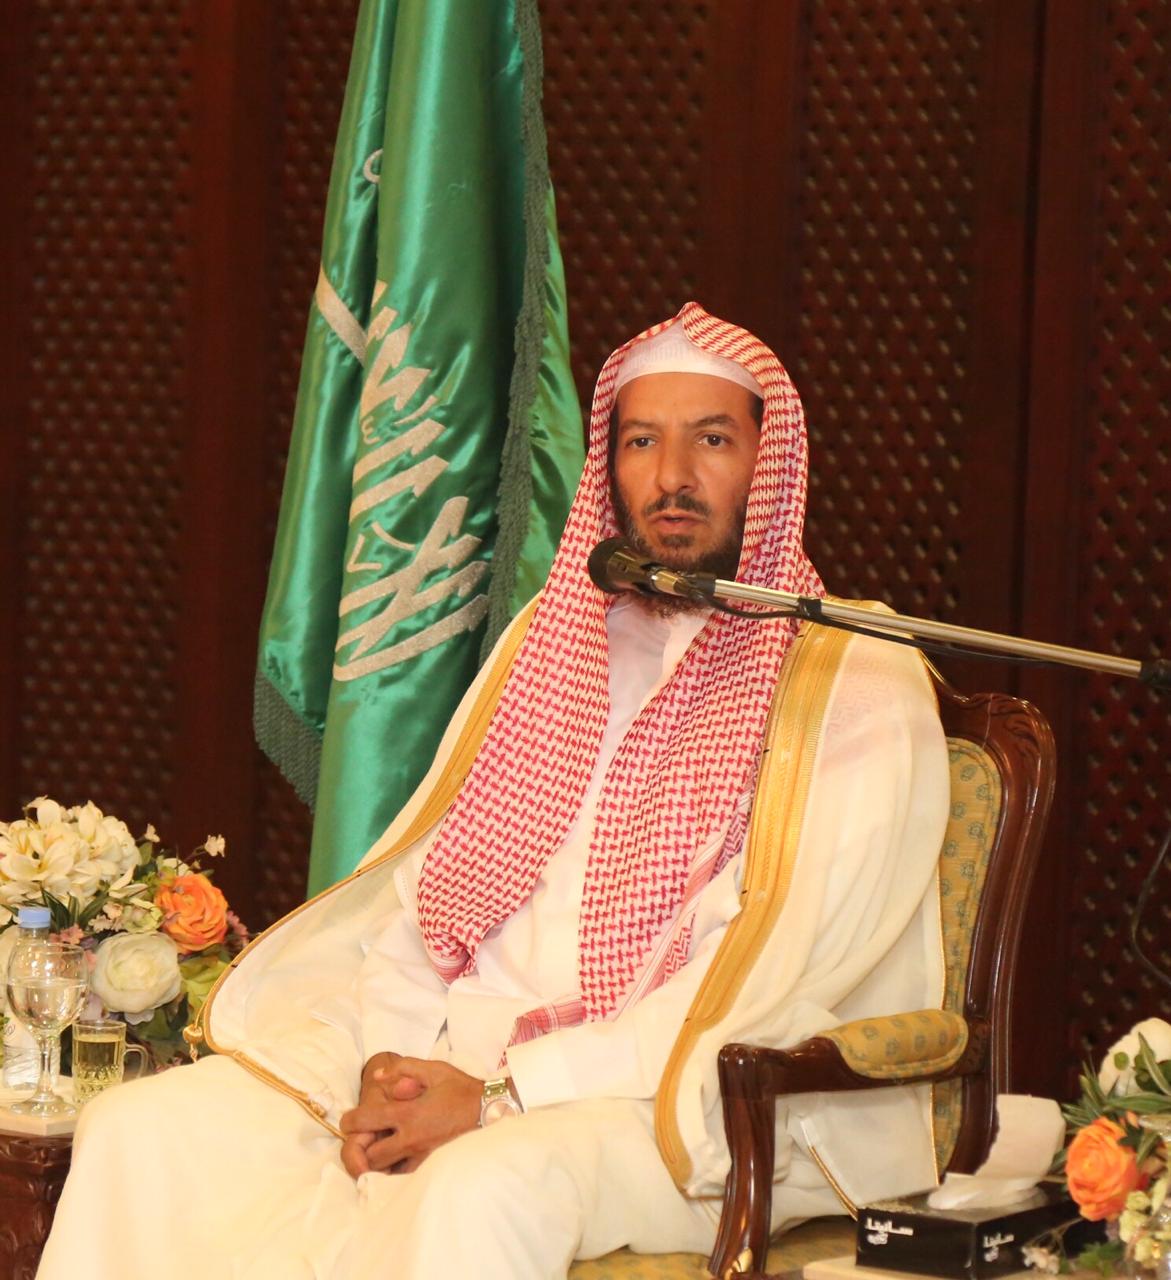 الشيخ الشثري: هناك دول ومنظمات سرية وعلنية تسعى إلى تقويض هذا الكيان السعودي